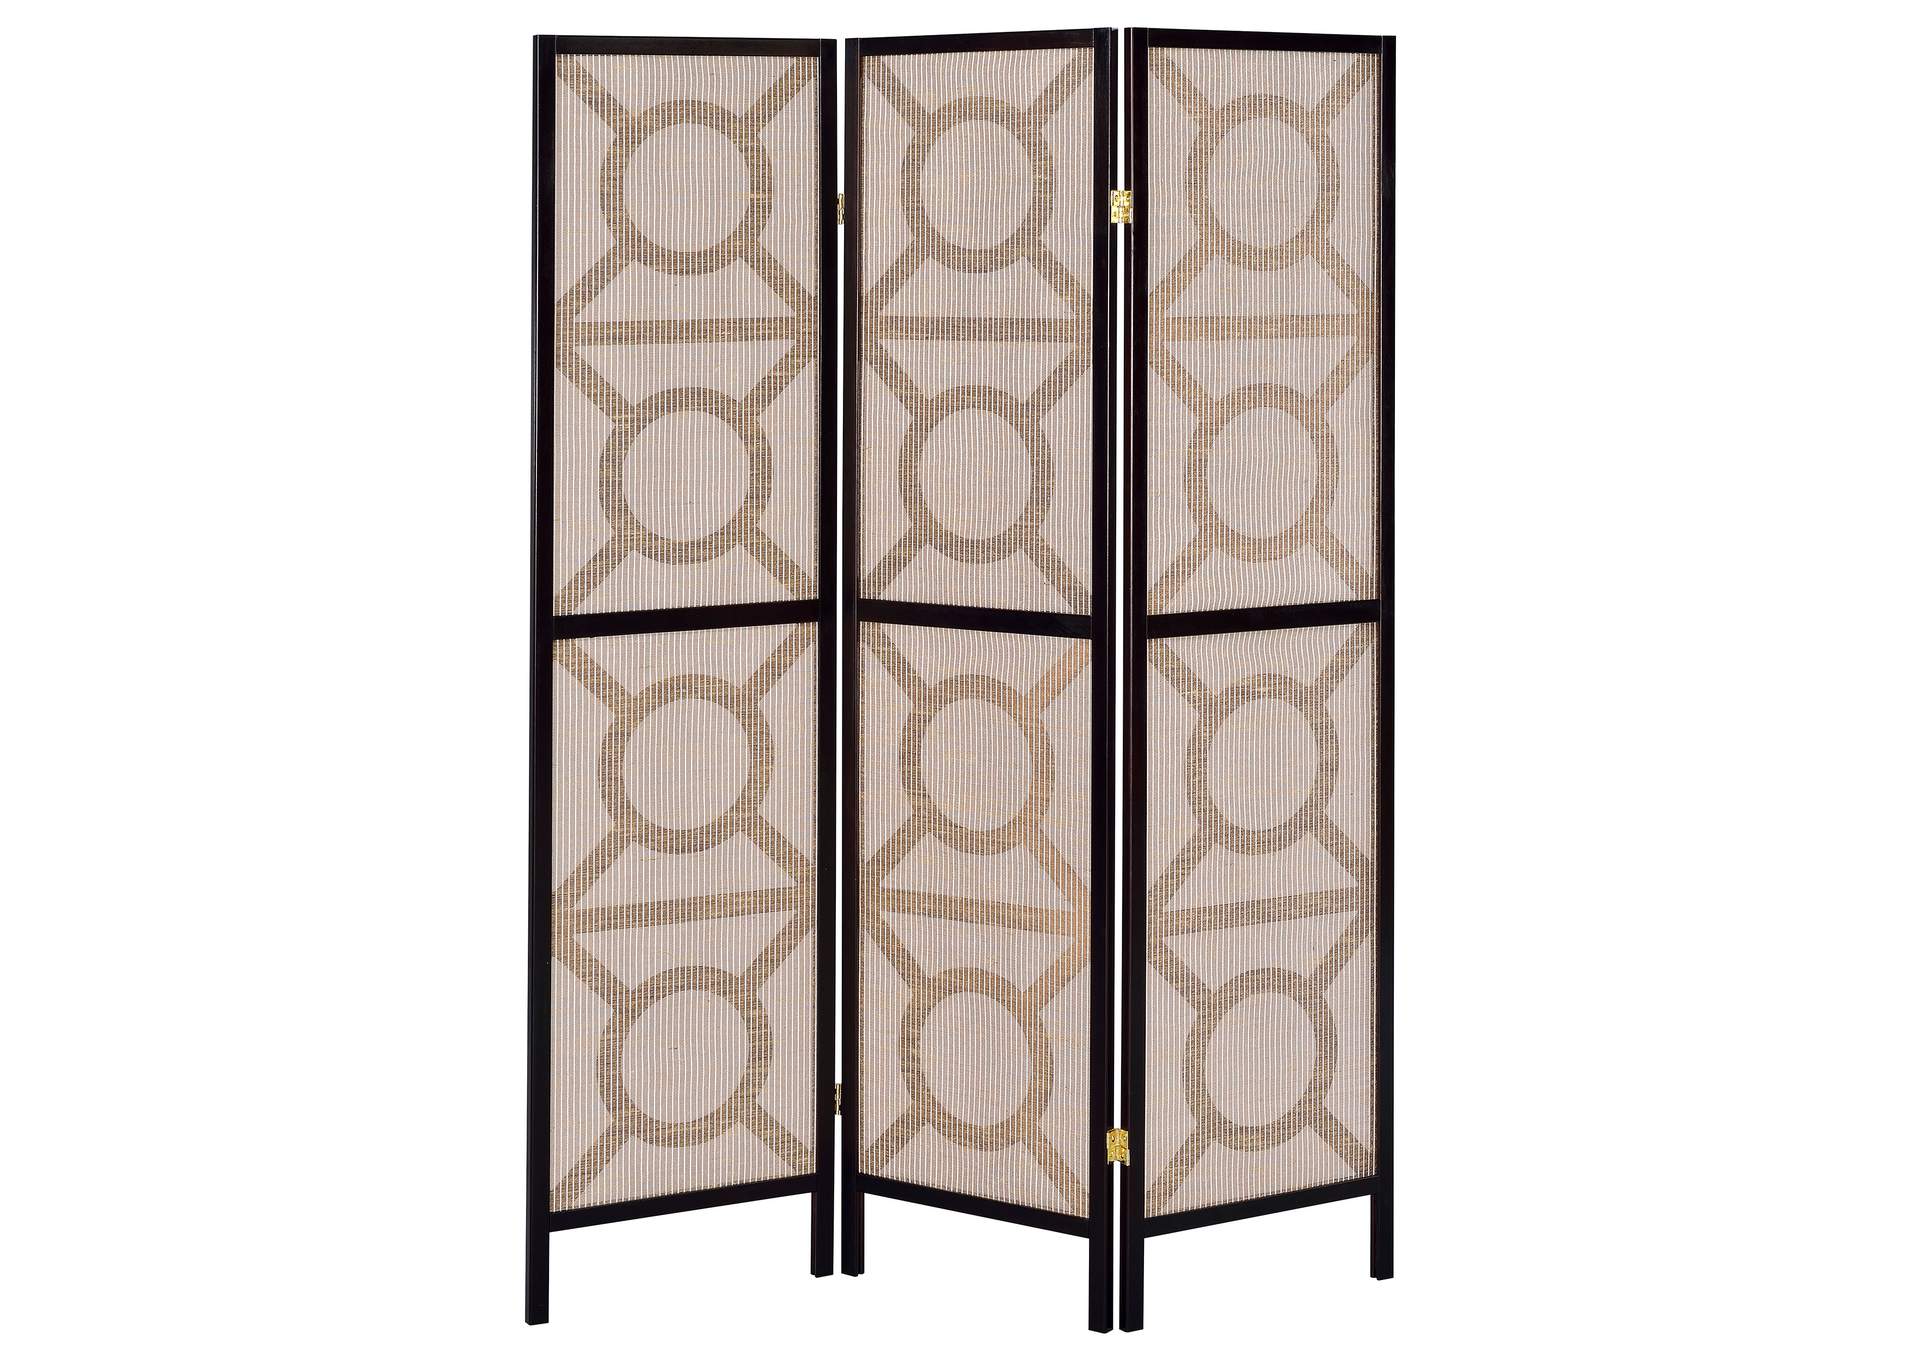 Vulcan 3-panel Geometric Folding Screen Tan and Cappuccino,Coaster Furniture